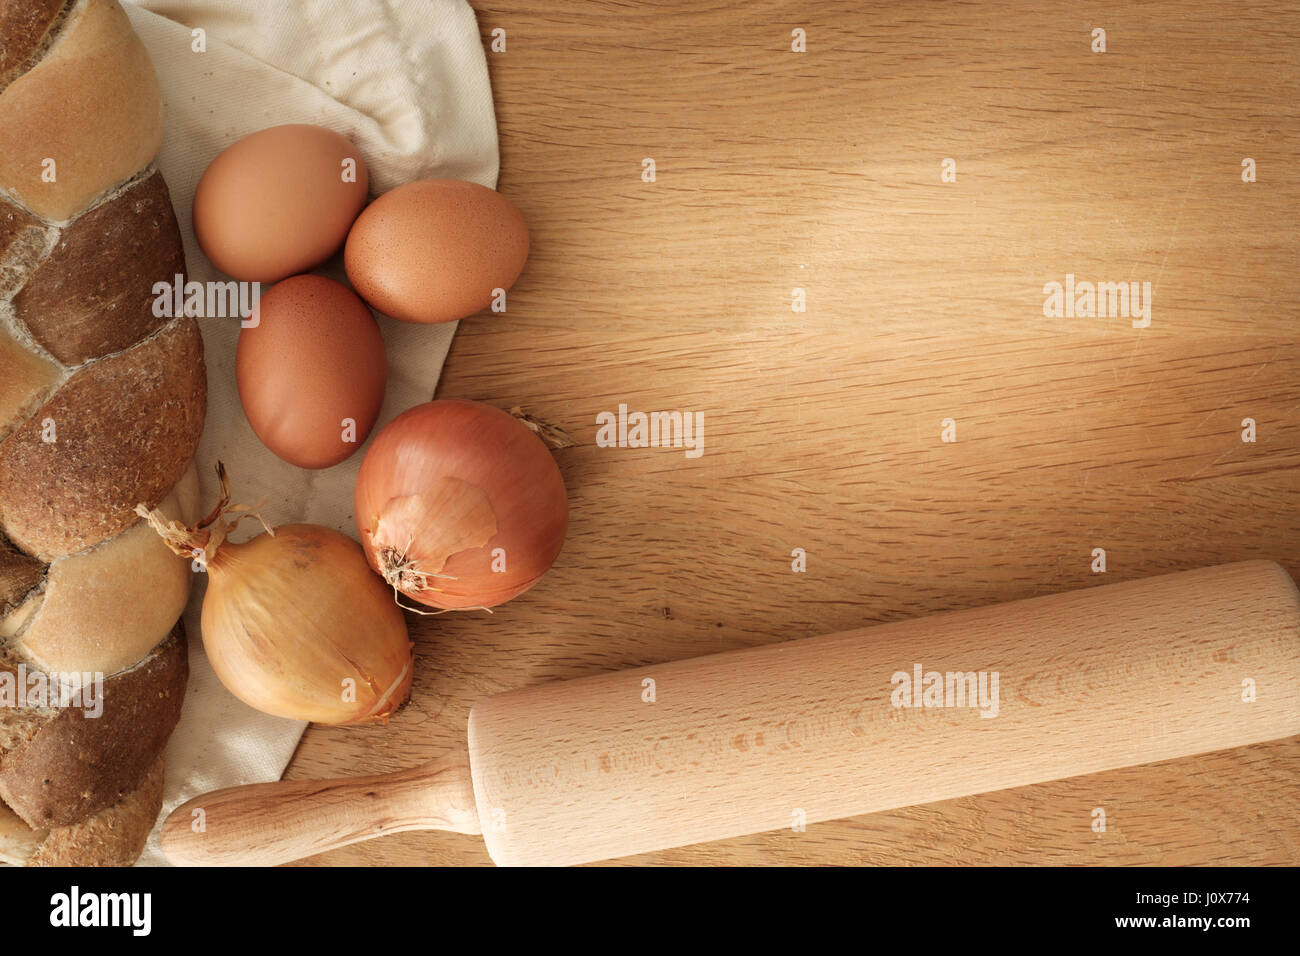 geflochtene Brot mit Zwiebeln, Eiern und Nudelholz auf einem Holztisch mit Textfreiraum, Food-Konzept Stockfoto